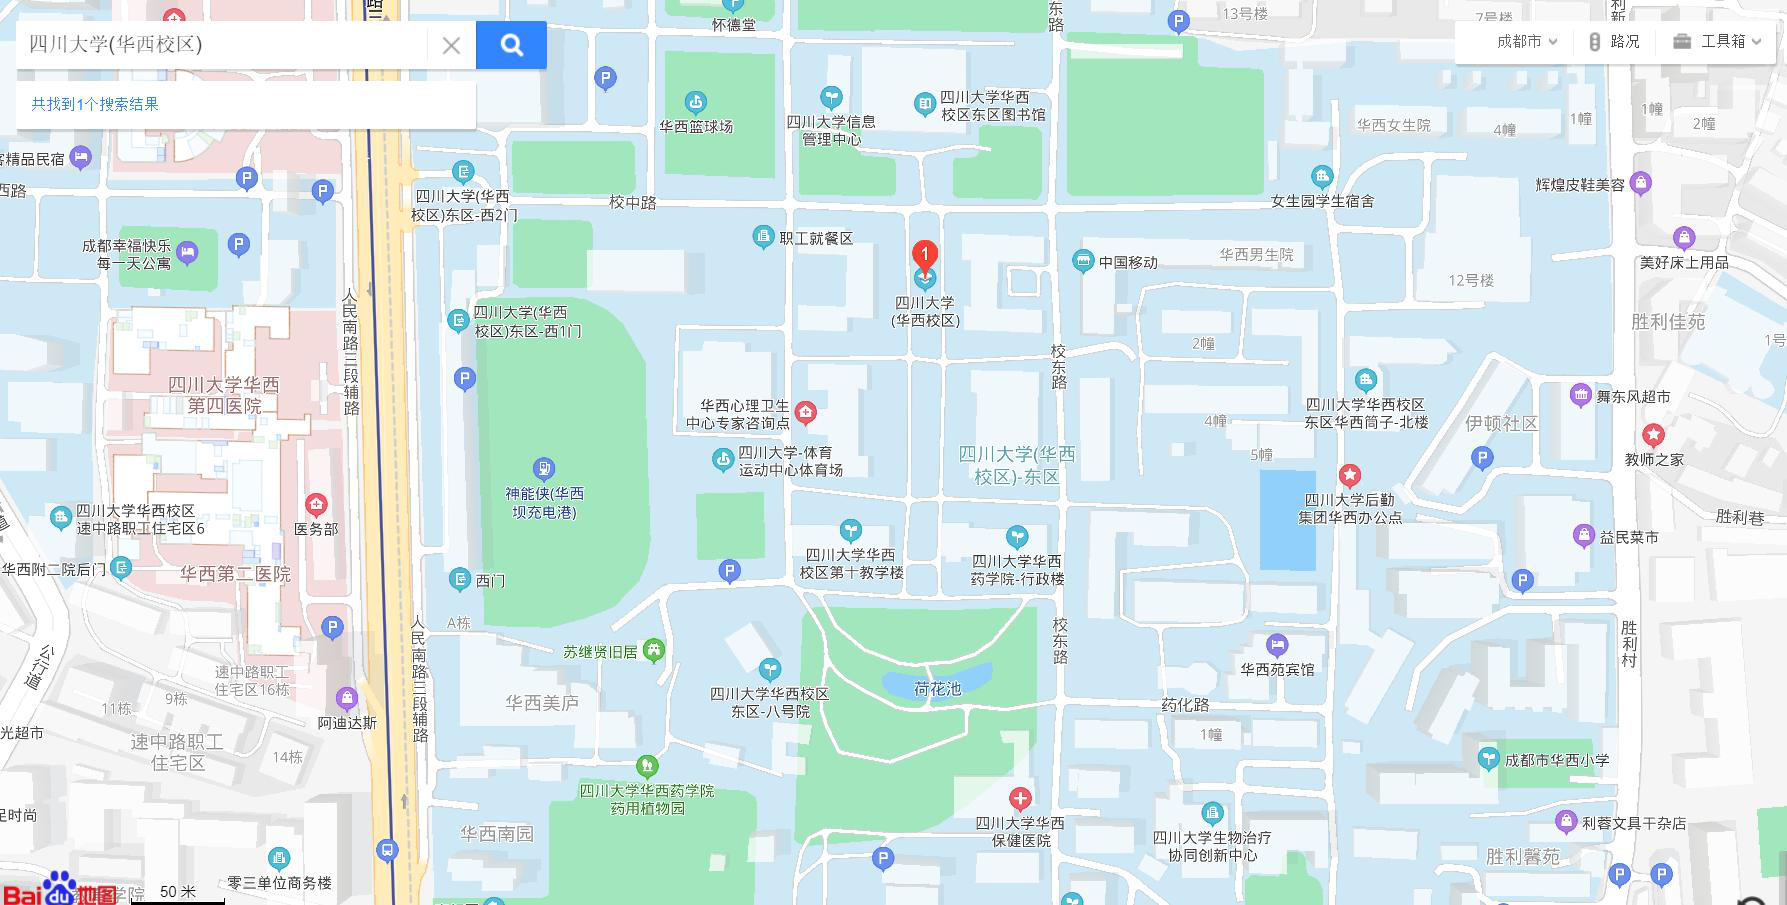 四川大学学校地图